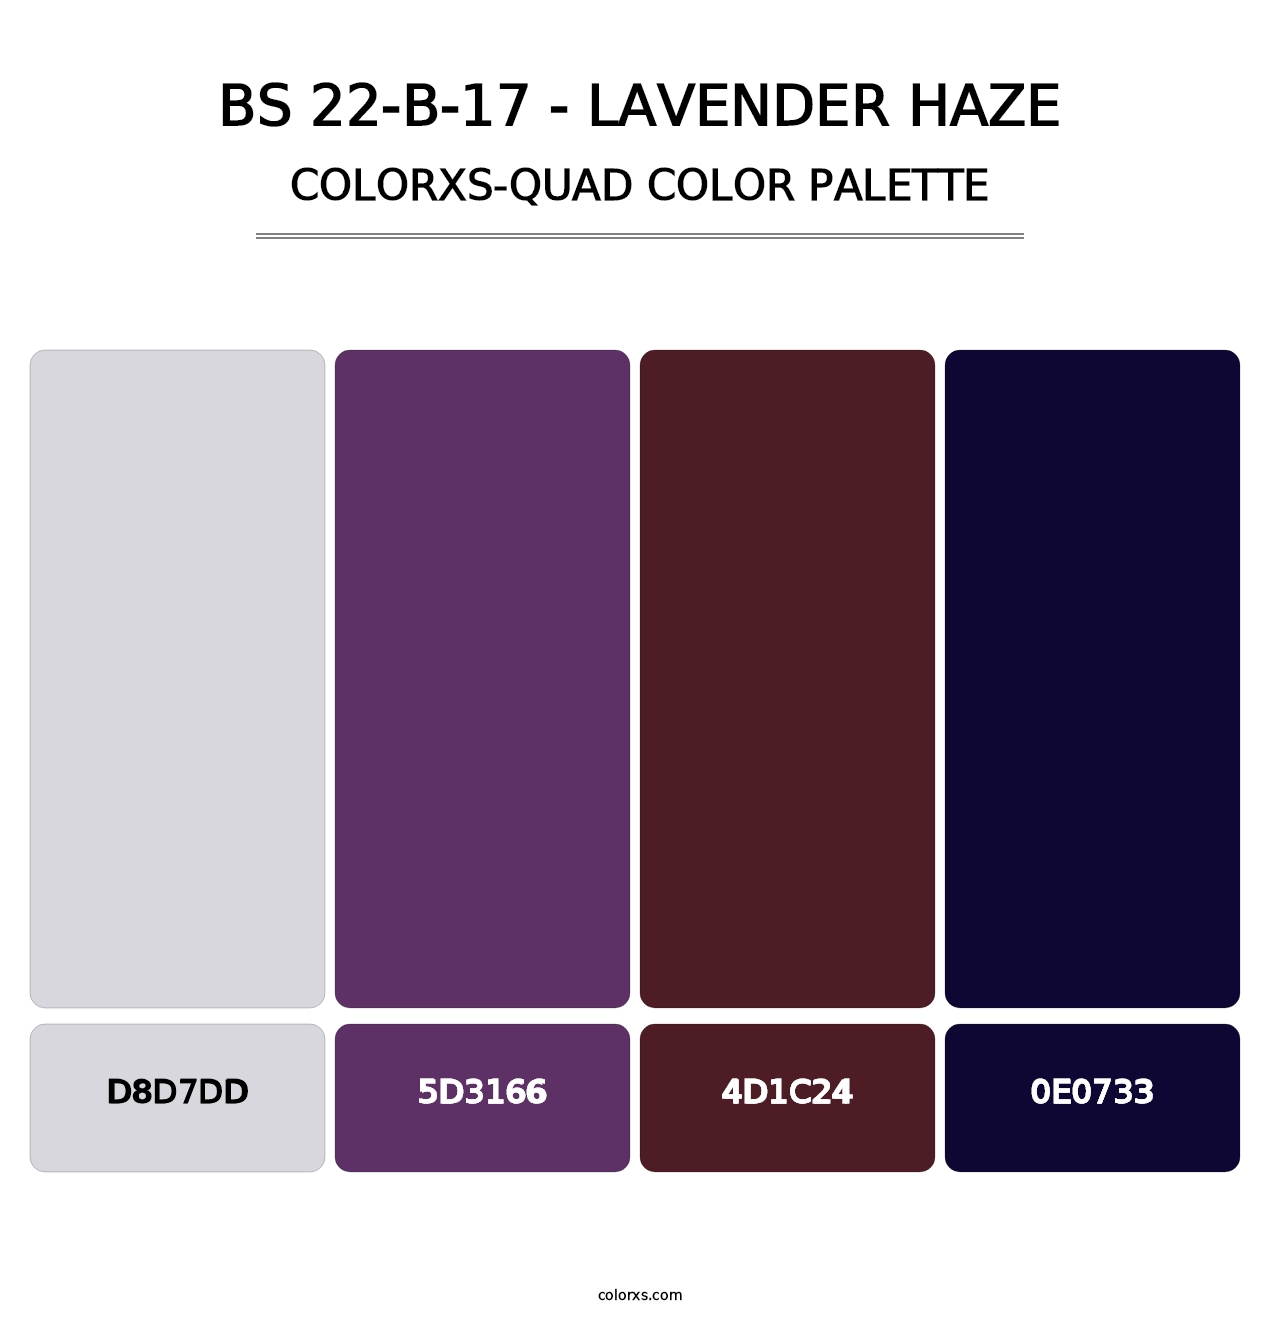 BS 22-B-17 - Lavender Haze - Colorxs Quad Palette